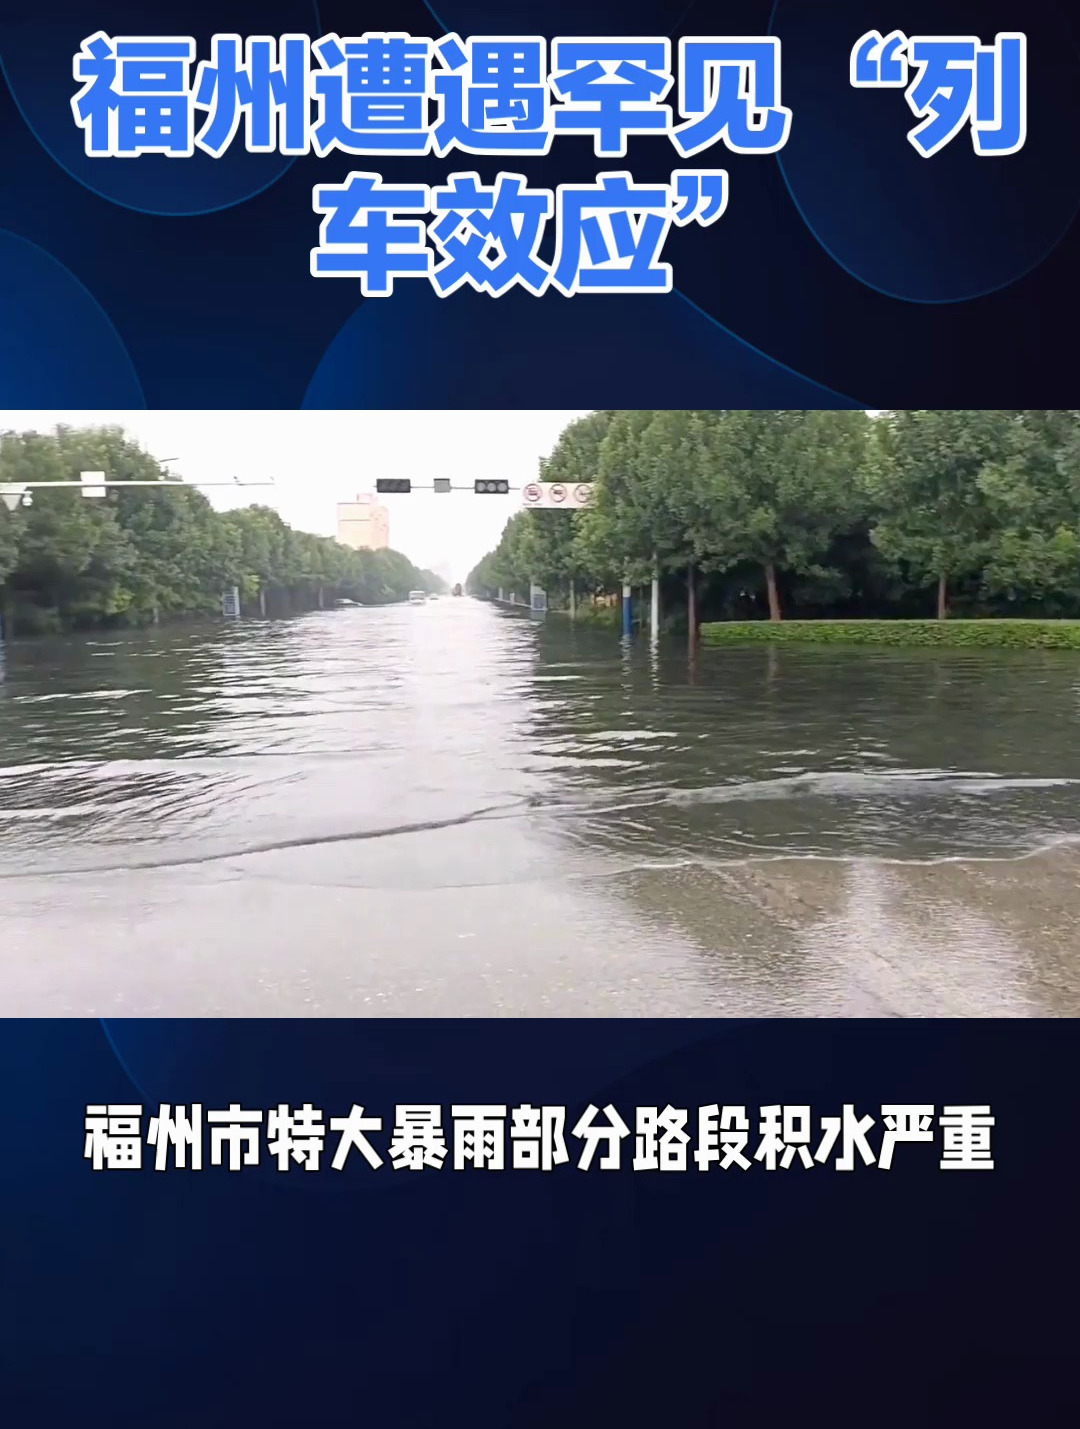 隆雪午后大雨多处水灾 多车泡水交通瘫痪 | 中马 | 地方 | 東方網 馬來西亞東方日報